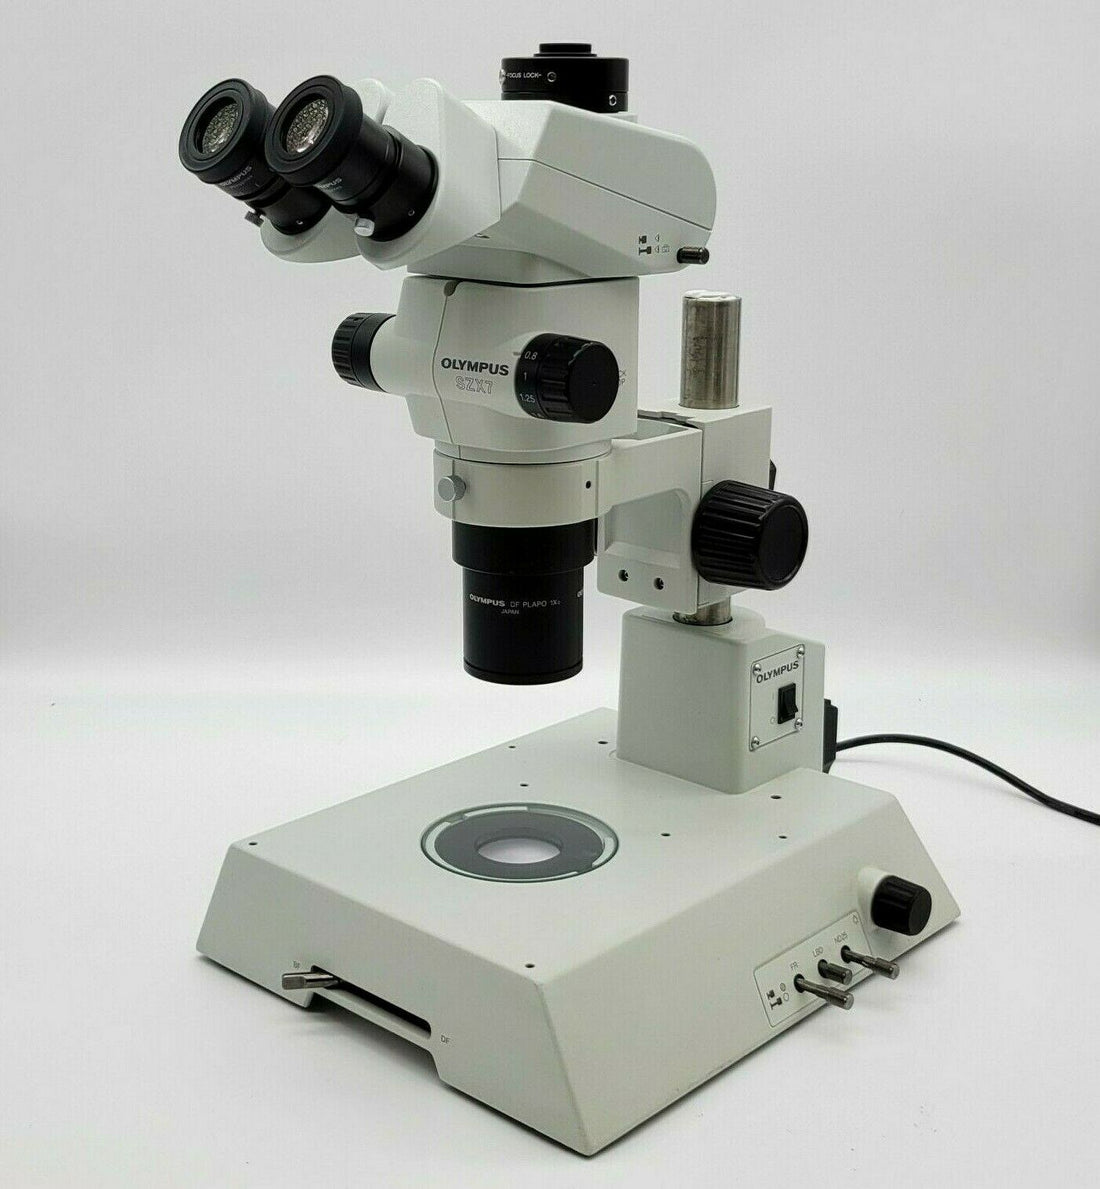 Compound Microscope vs Stereo Microscope